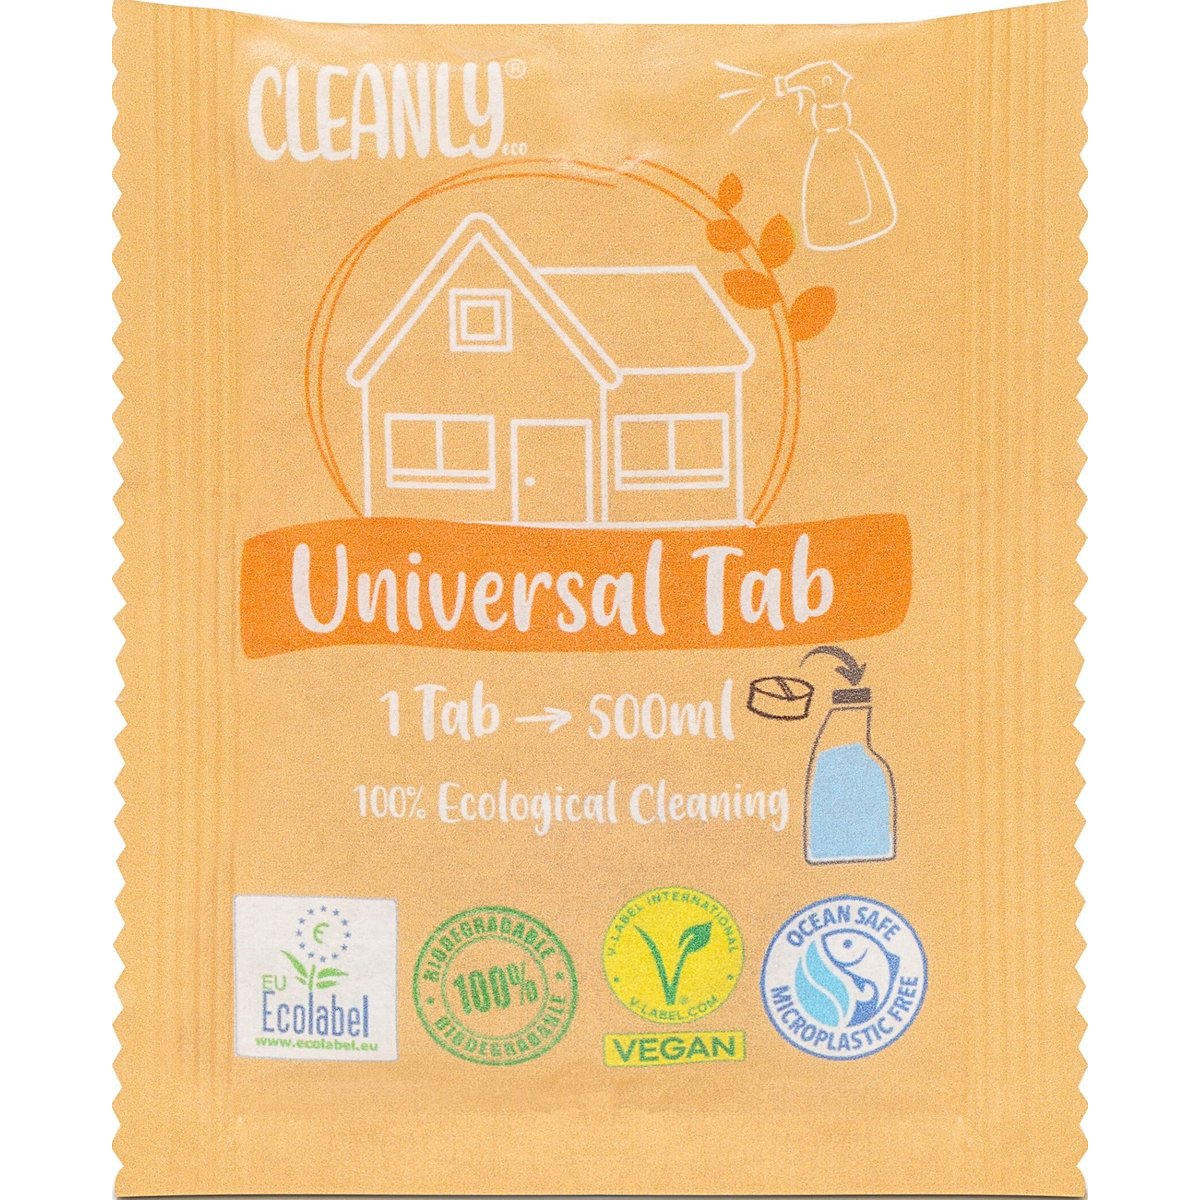 Cleanly Eco Univerzální čisticí tableta